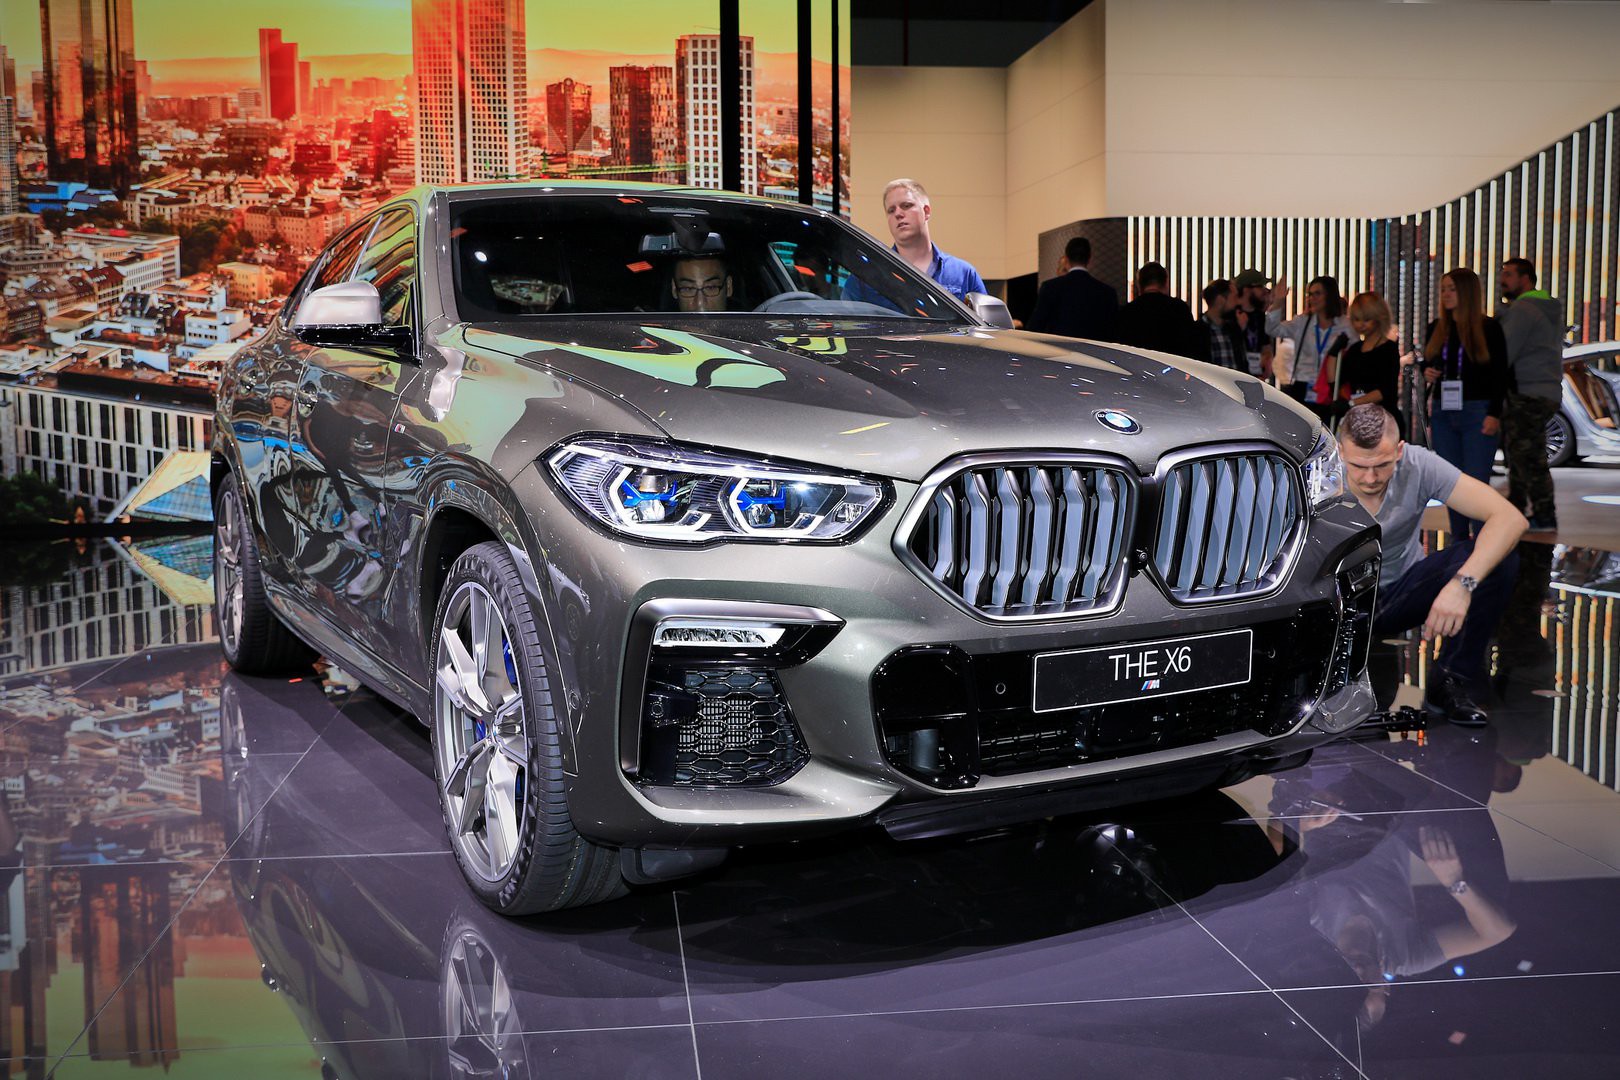 Đại lý bắt đầu nhận đặt cọc BMW X6 2020 - sức ép lớn cho Mercedes-Benz GLE Coupe tại Việt Nam - Ảnh 1.